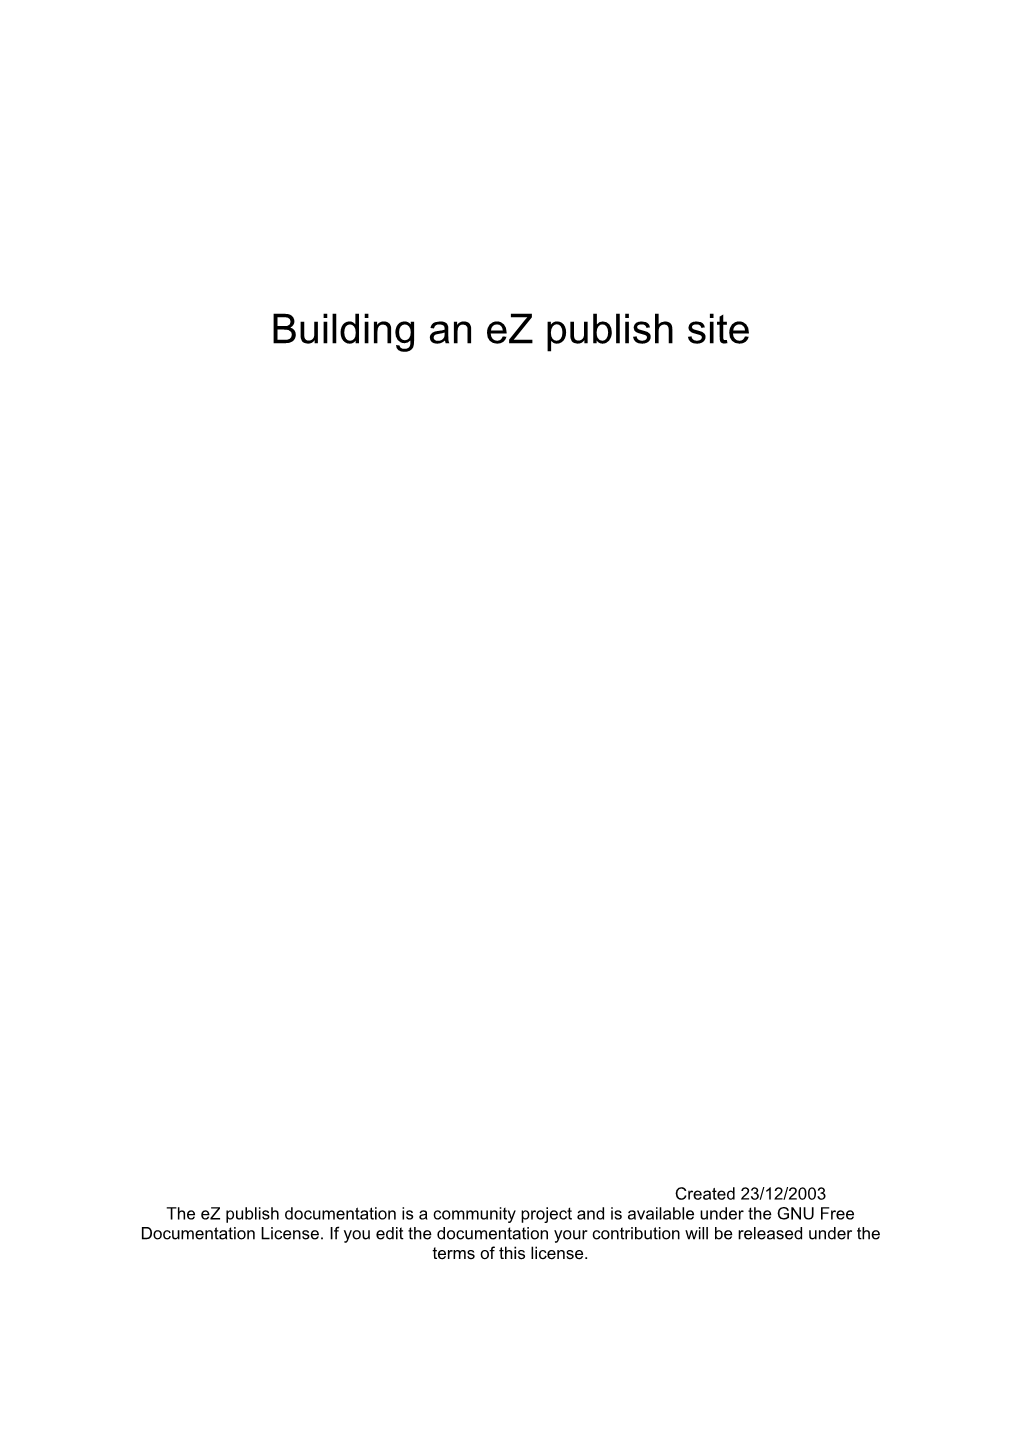 Building an Ez Publish Site